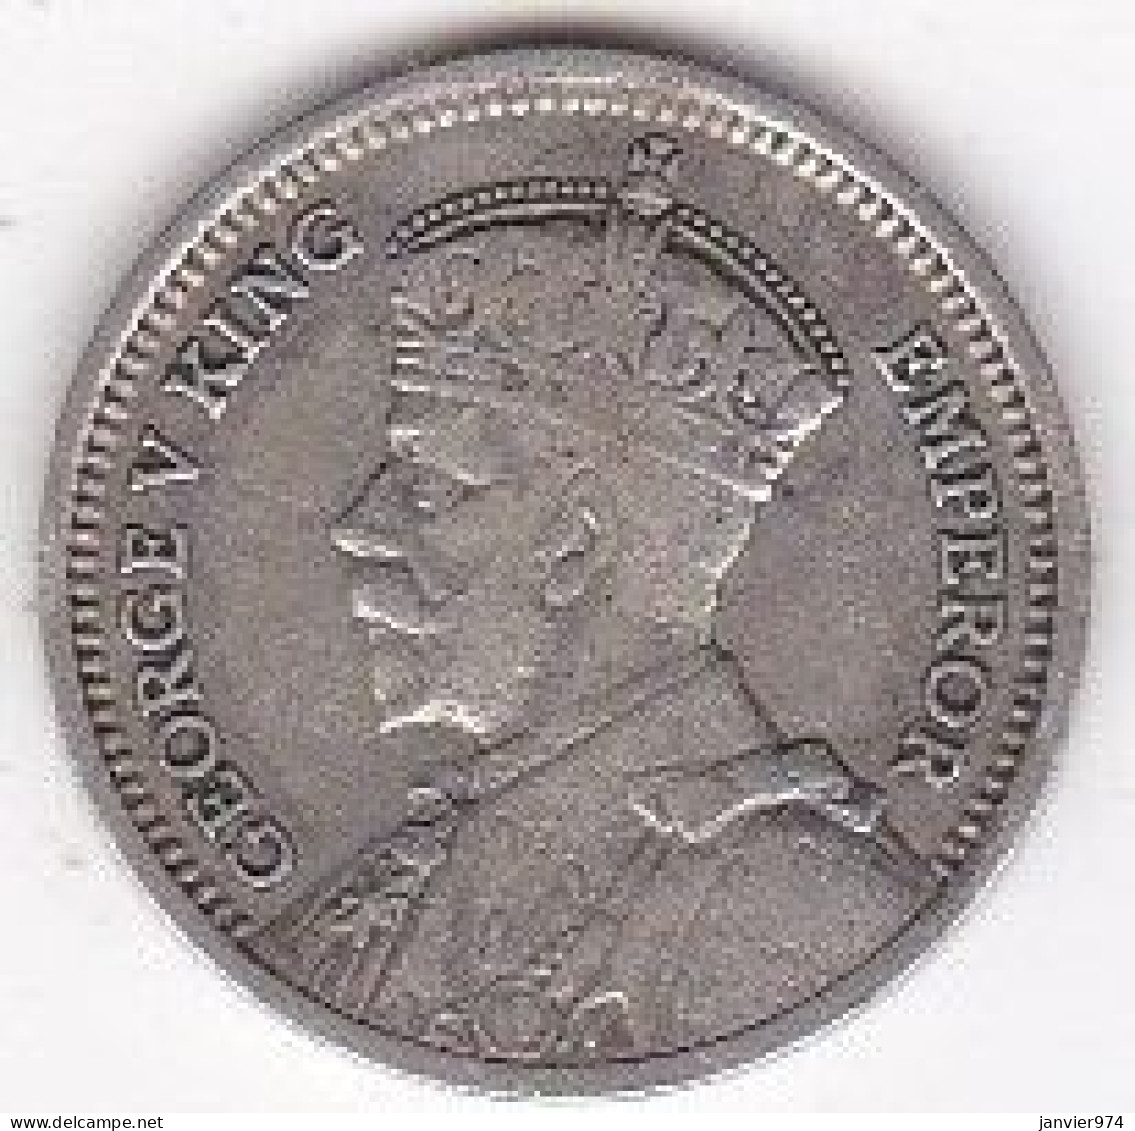 New Zealand, 3 Pence 1934 , George V, En Argent, KM# 1 - Nouvelle-Zélande